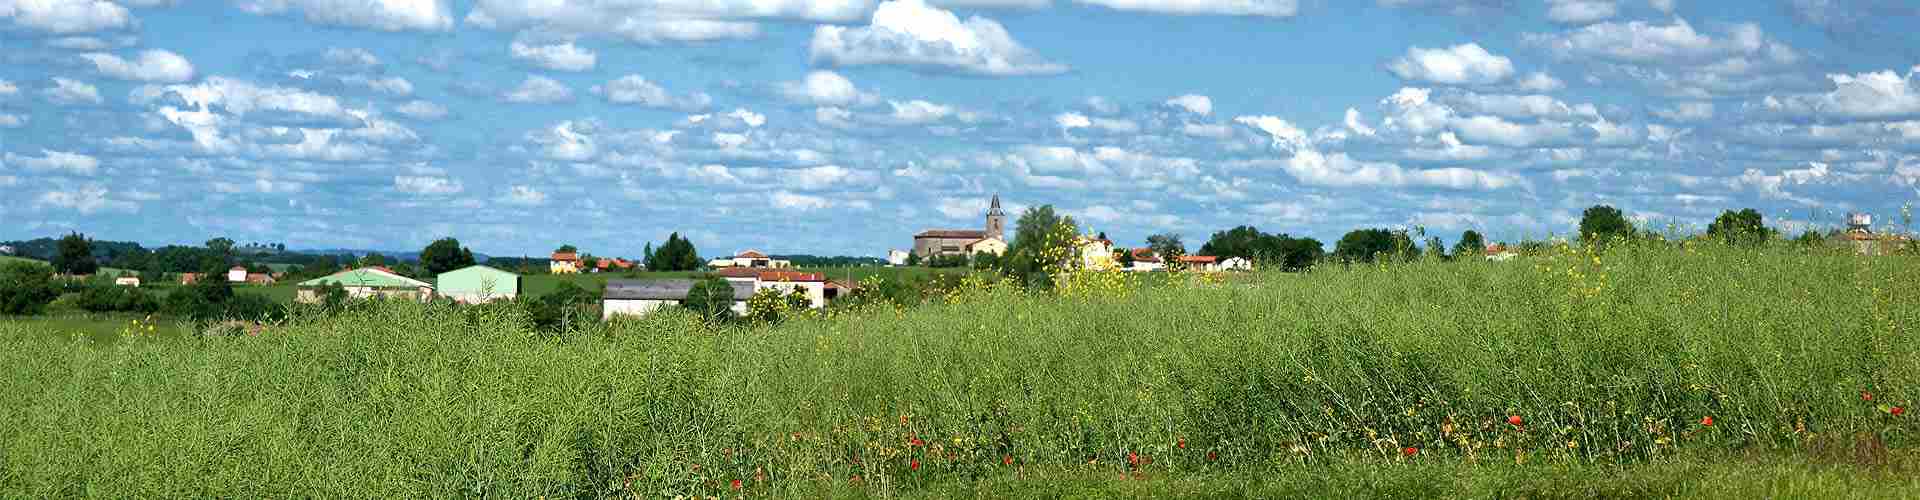 Casa Rural El Sitio de Constanzana - Pedro Bernardo